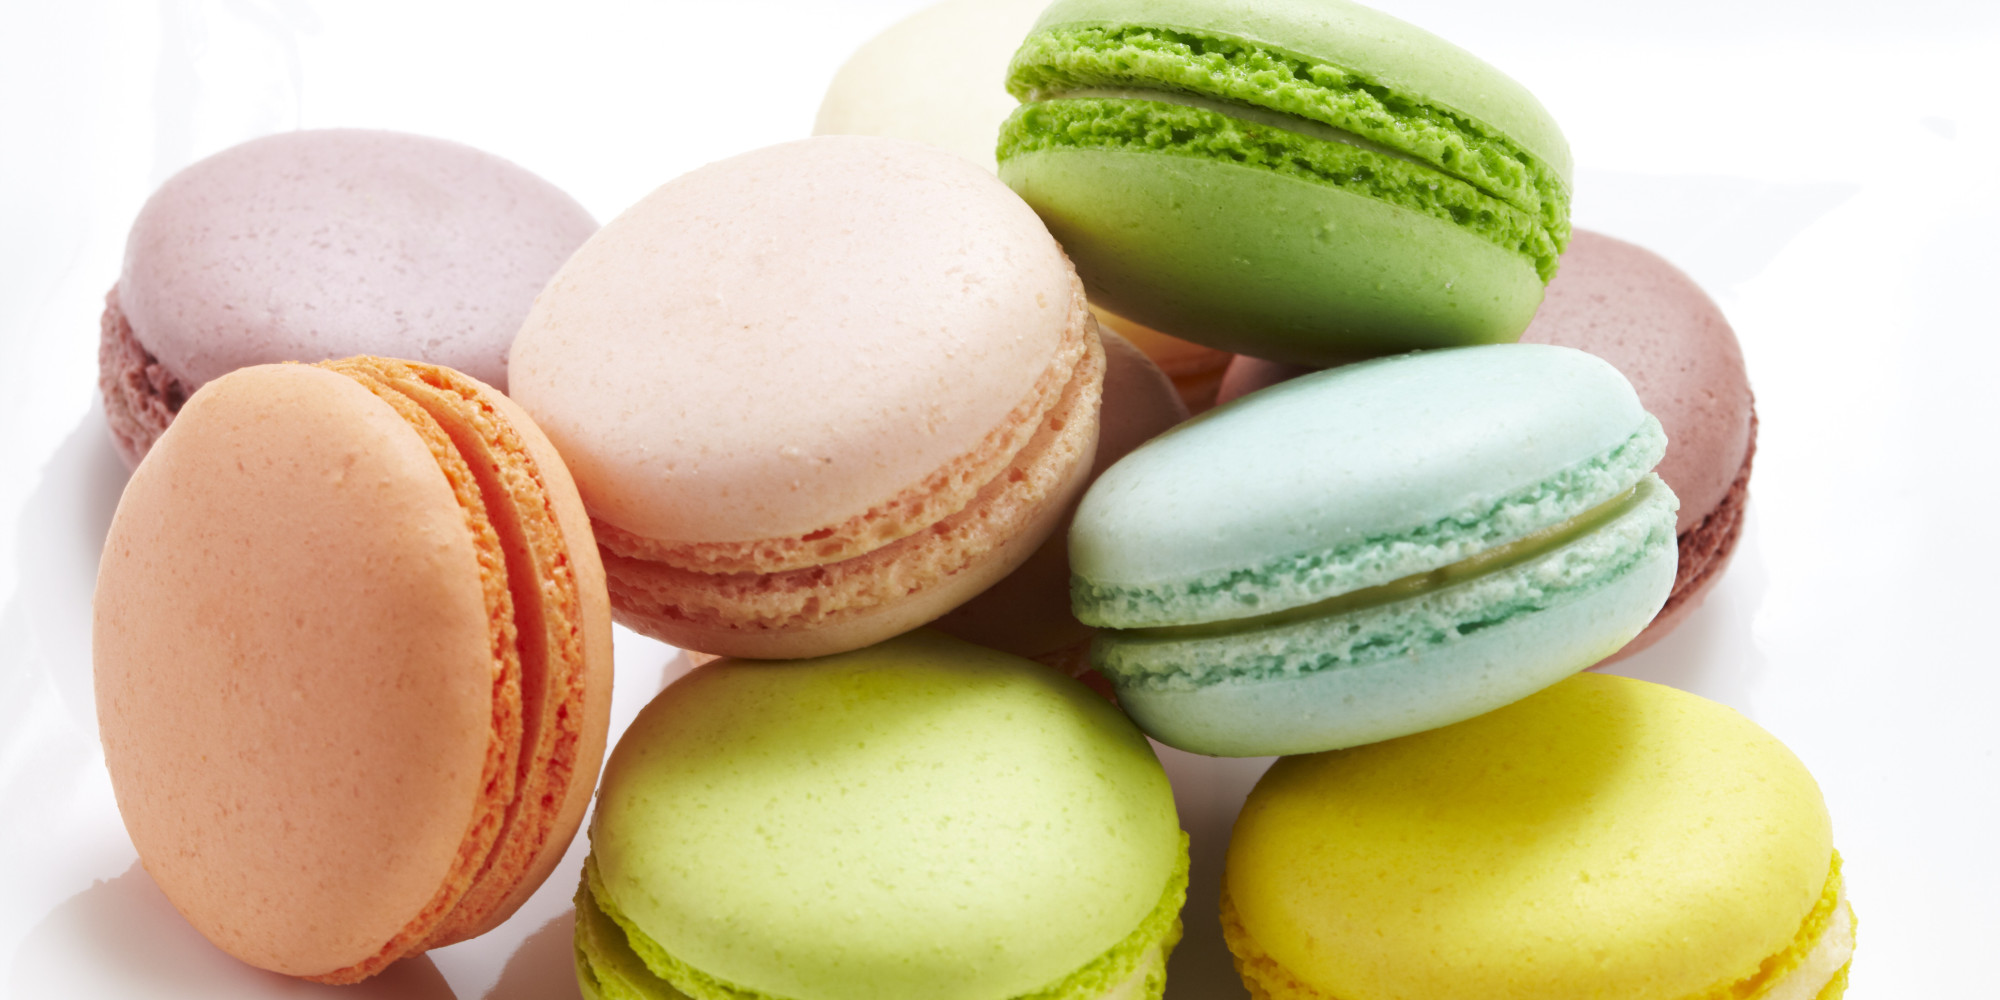 Basic French Macarons for Beginner Bakers | HuffPost